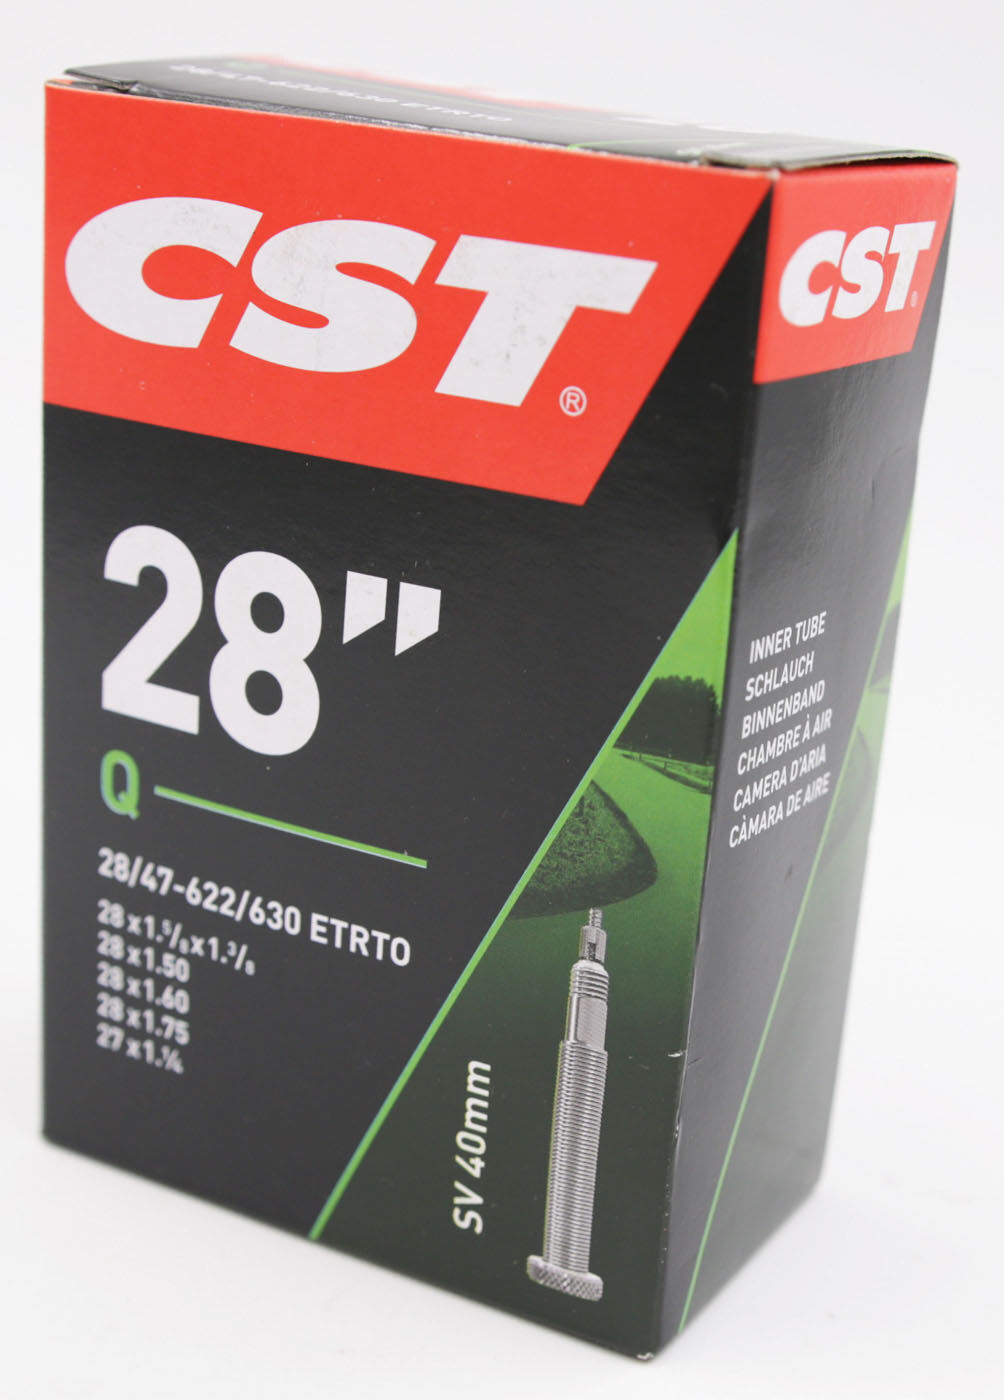 CST Schlauch SV 40 mm für 28" (28/47-622/635)